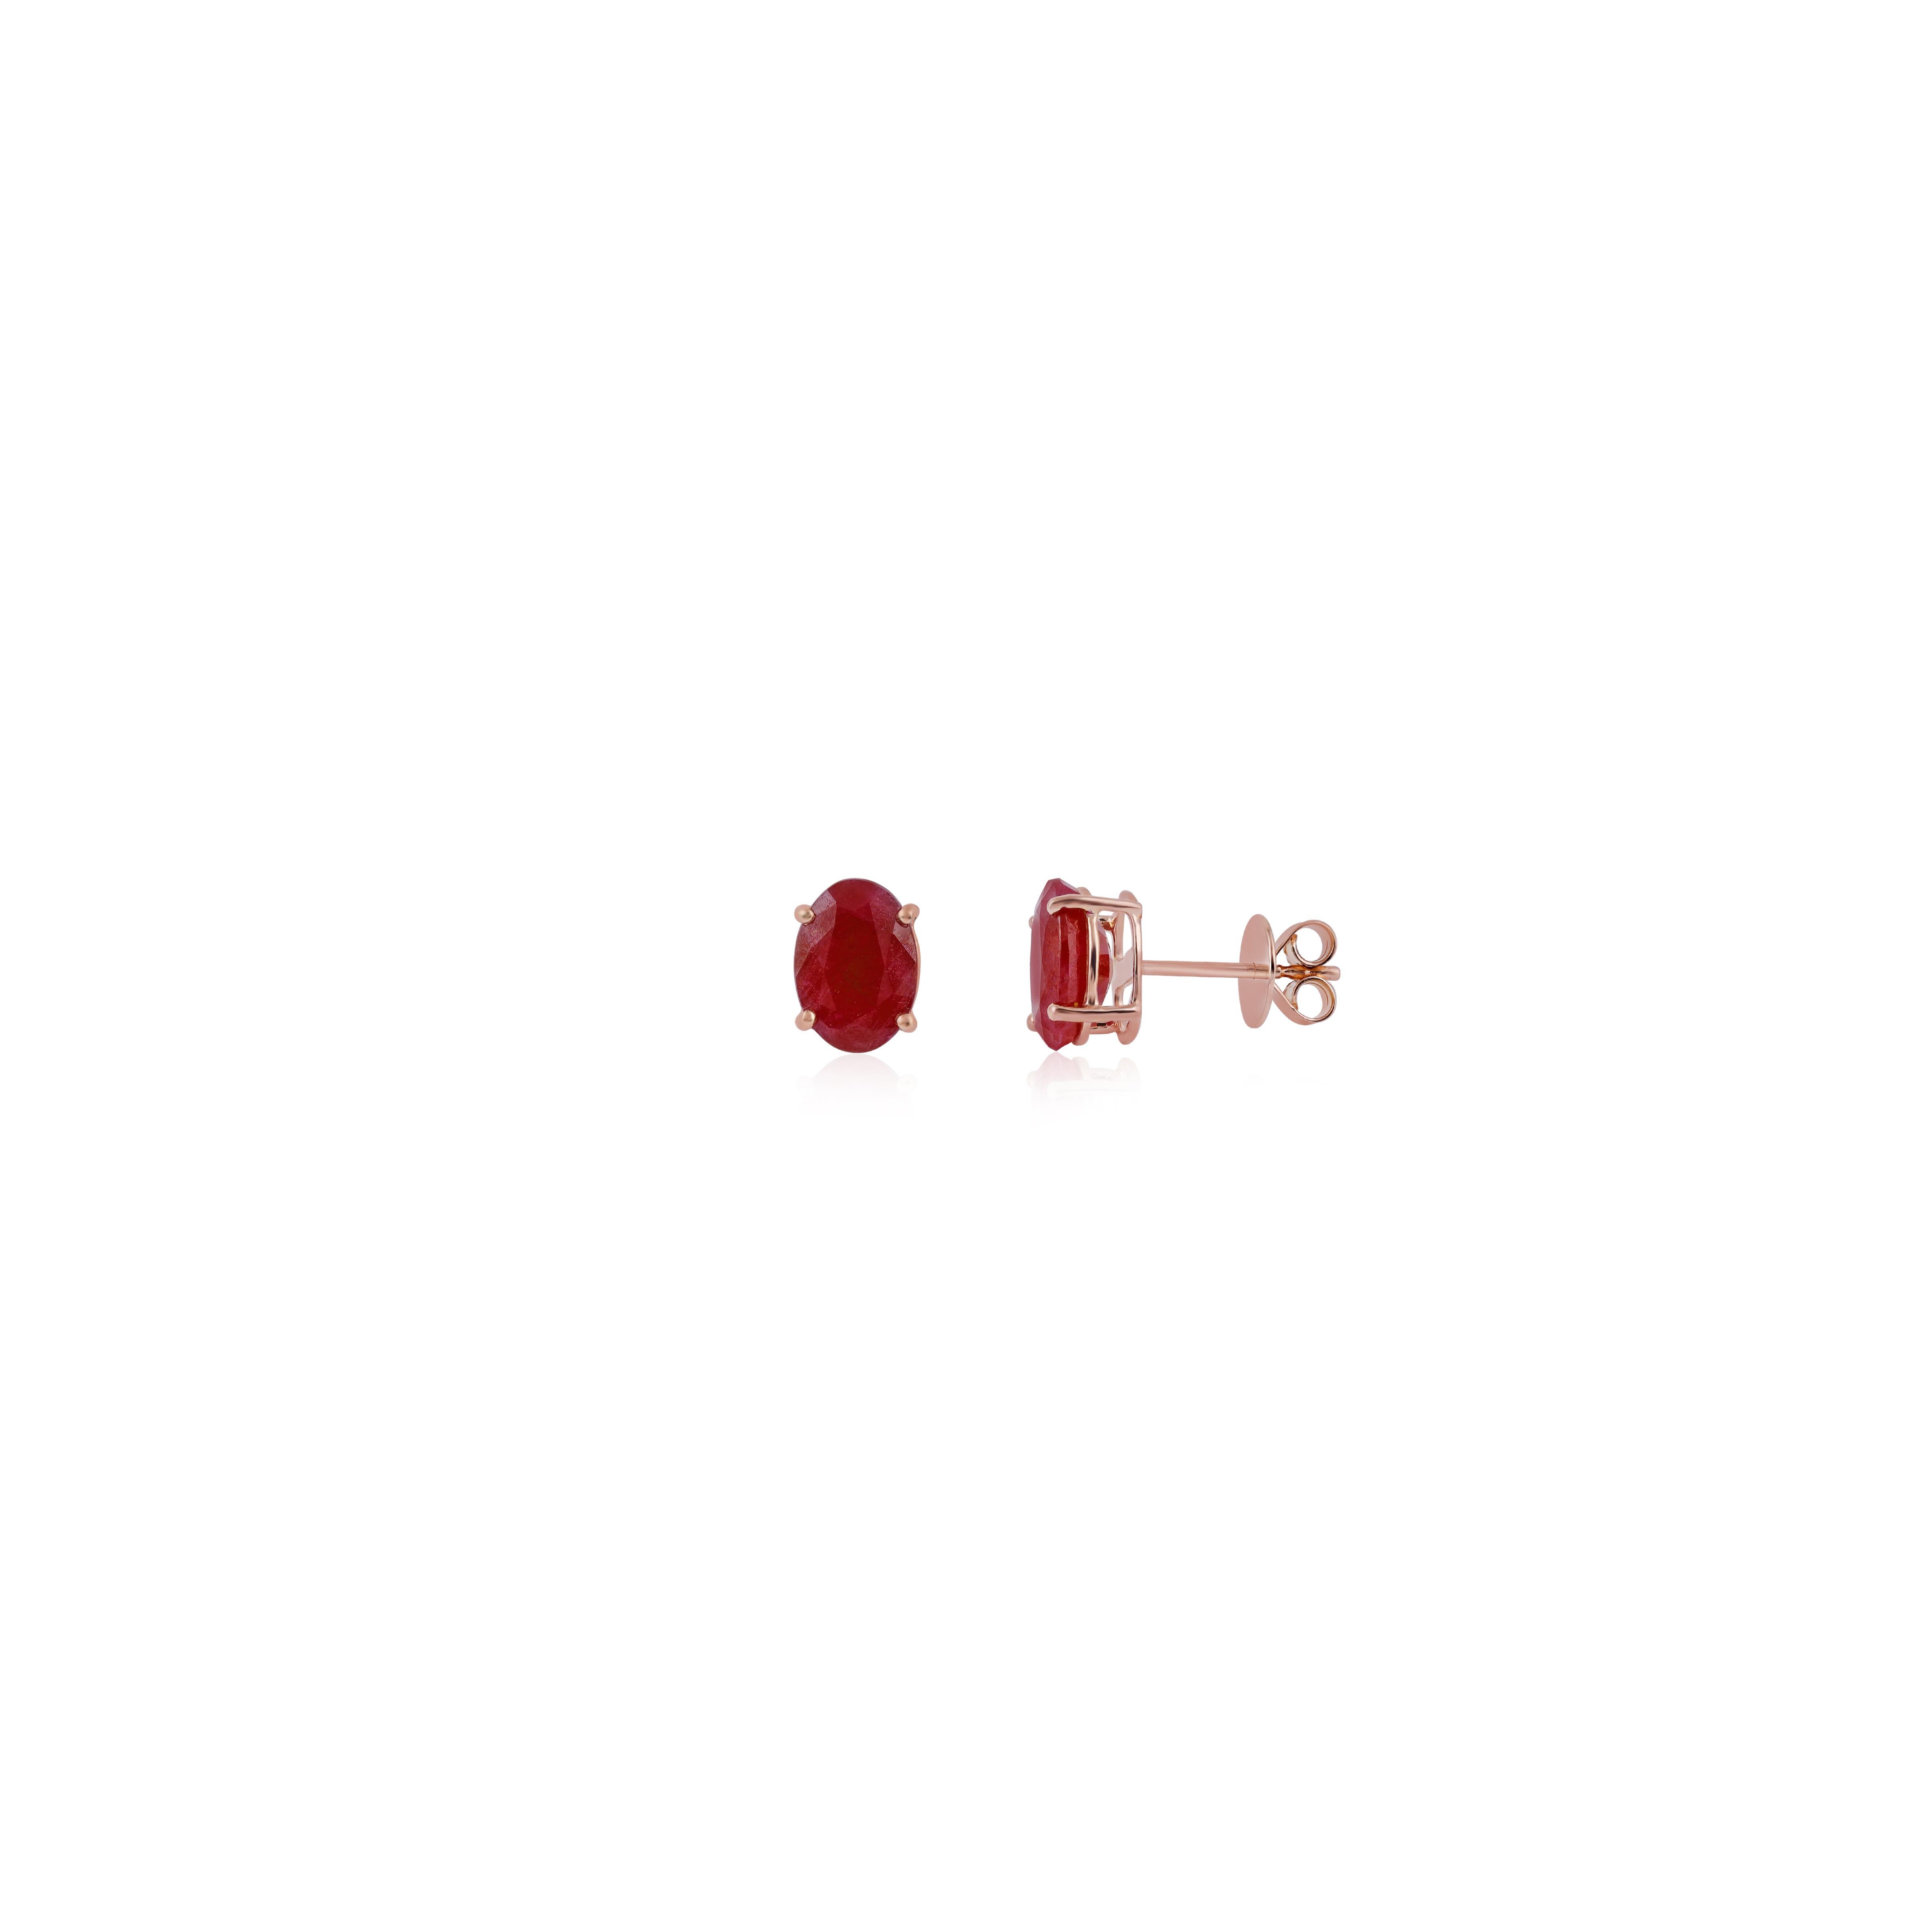 Modern Clear Burma  Ruby Earrings Studs in 18k Rose Gold For Sale